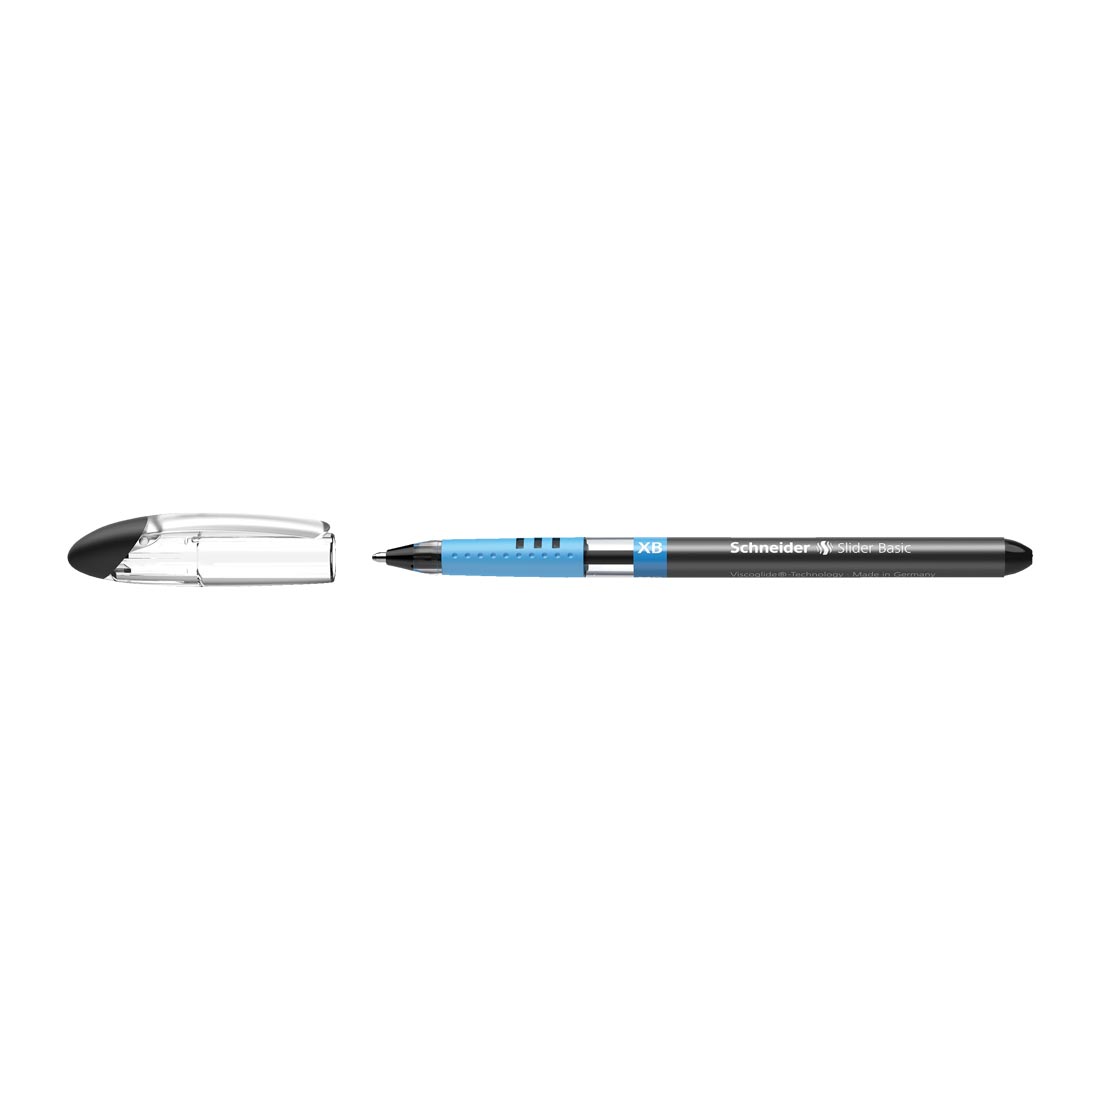 Slider BASIC Ballpoint Pen XB, Box of 10#ink-color_black